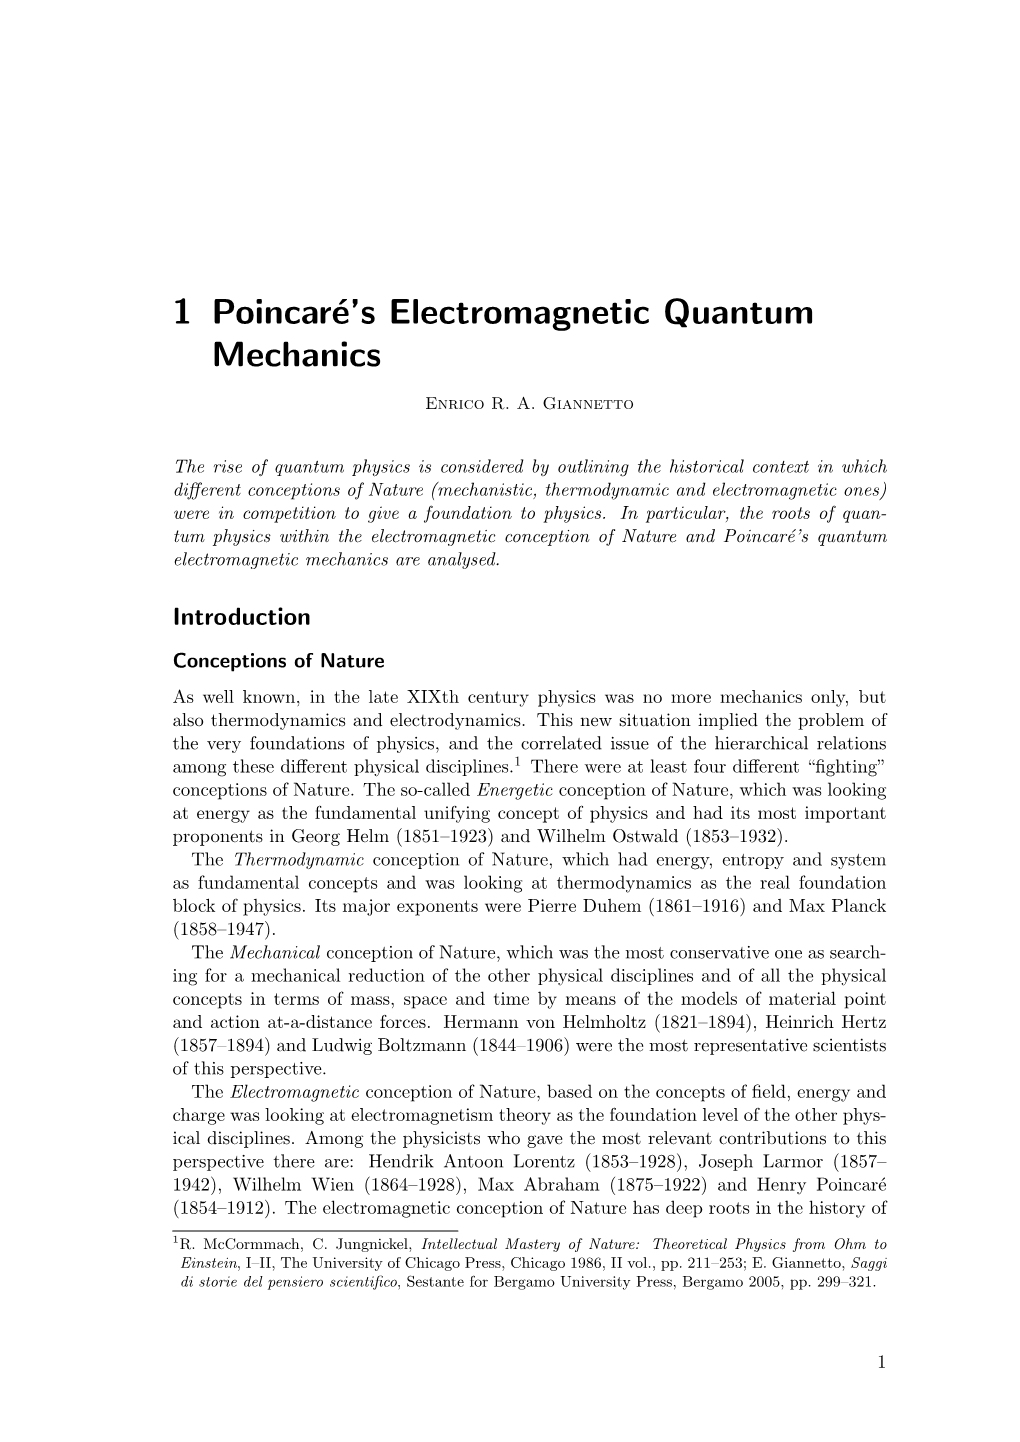 1 Poincaré's Electromagnetic Quantum Mechanics